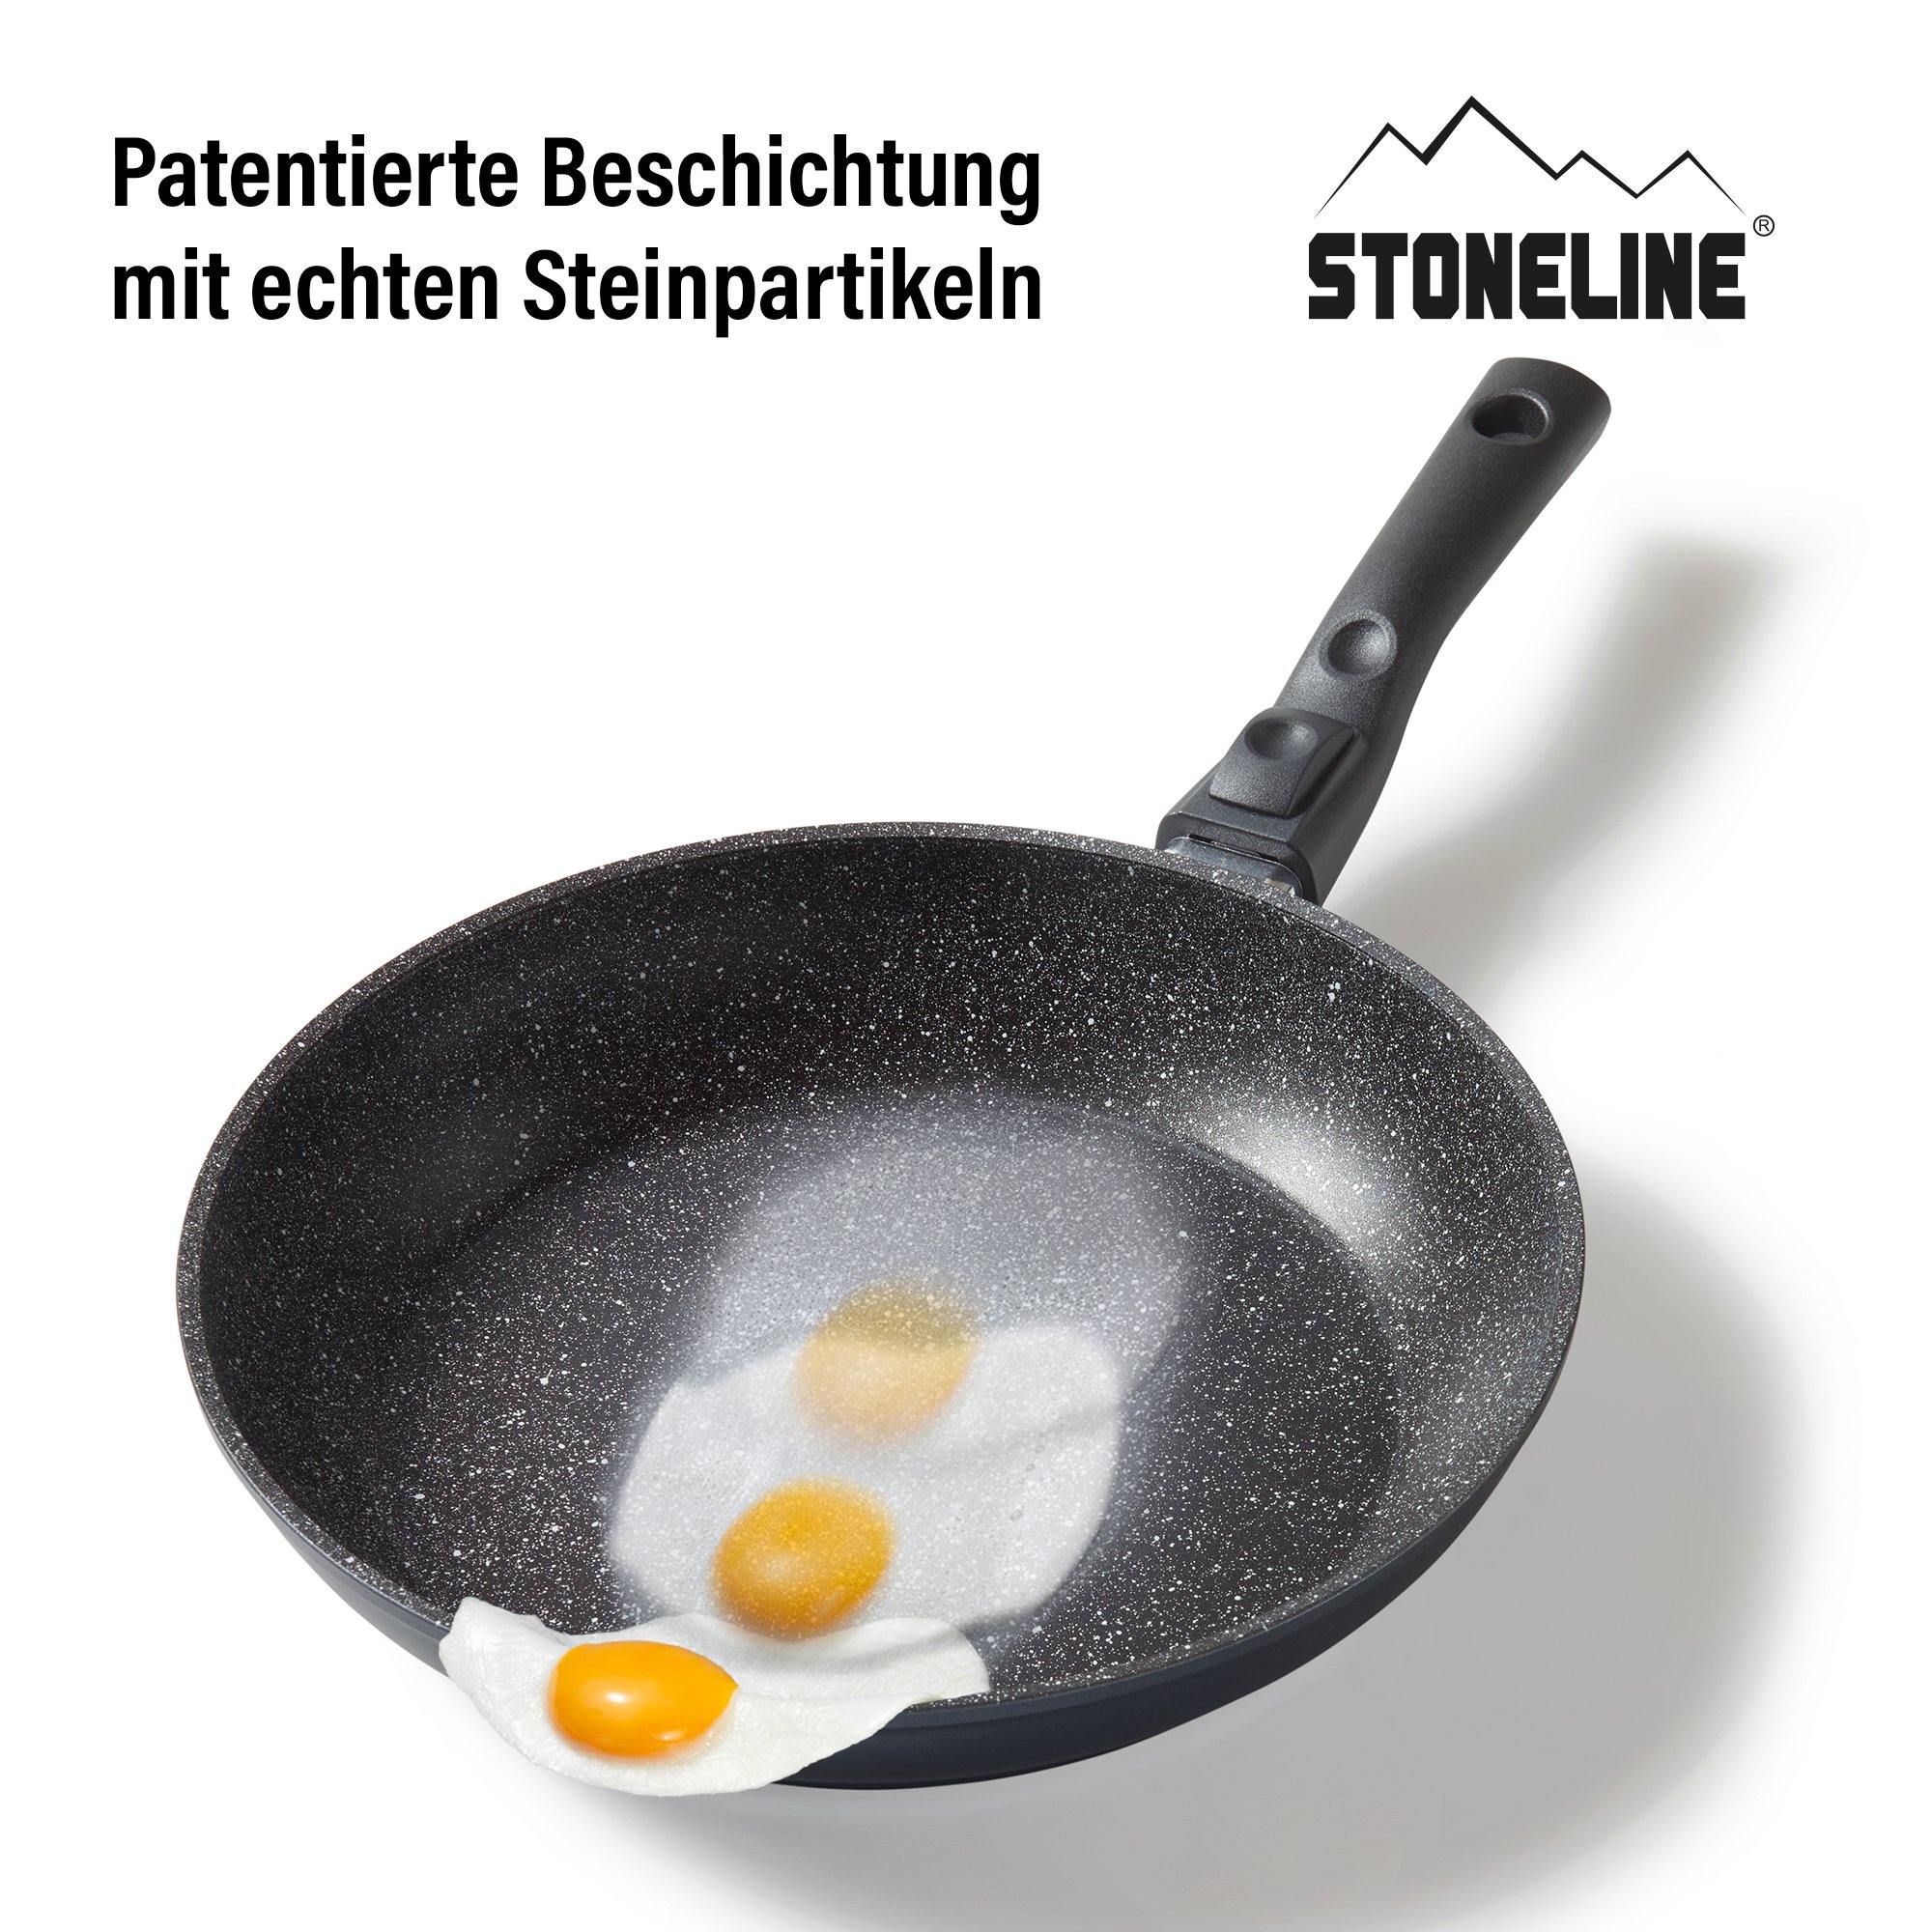 STONELINE® sartén 28 cm, Made in Germany con mango extraíble, inducción y recubrimiento antiadherente